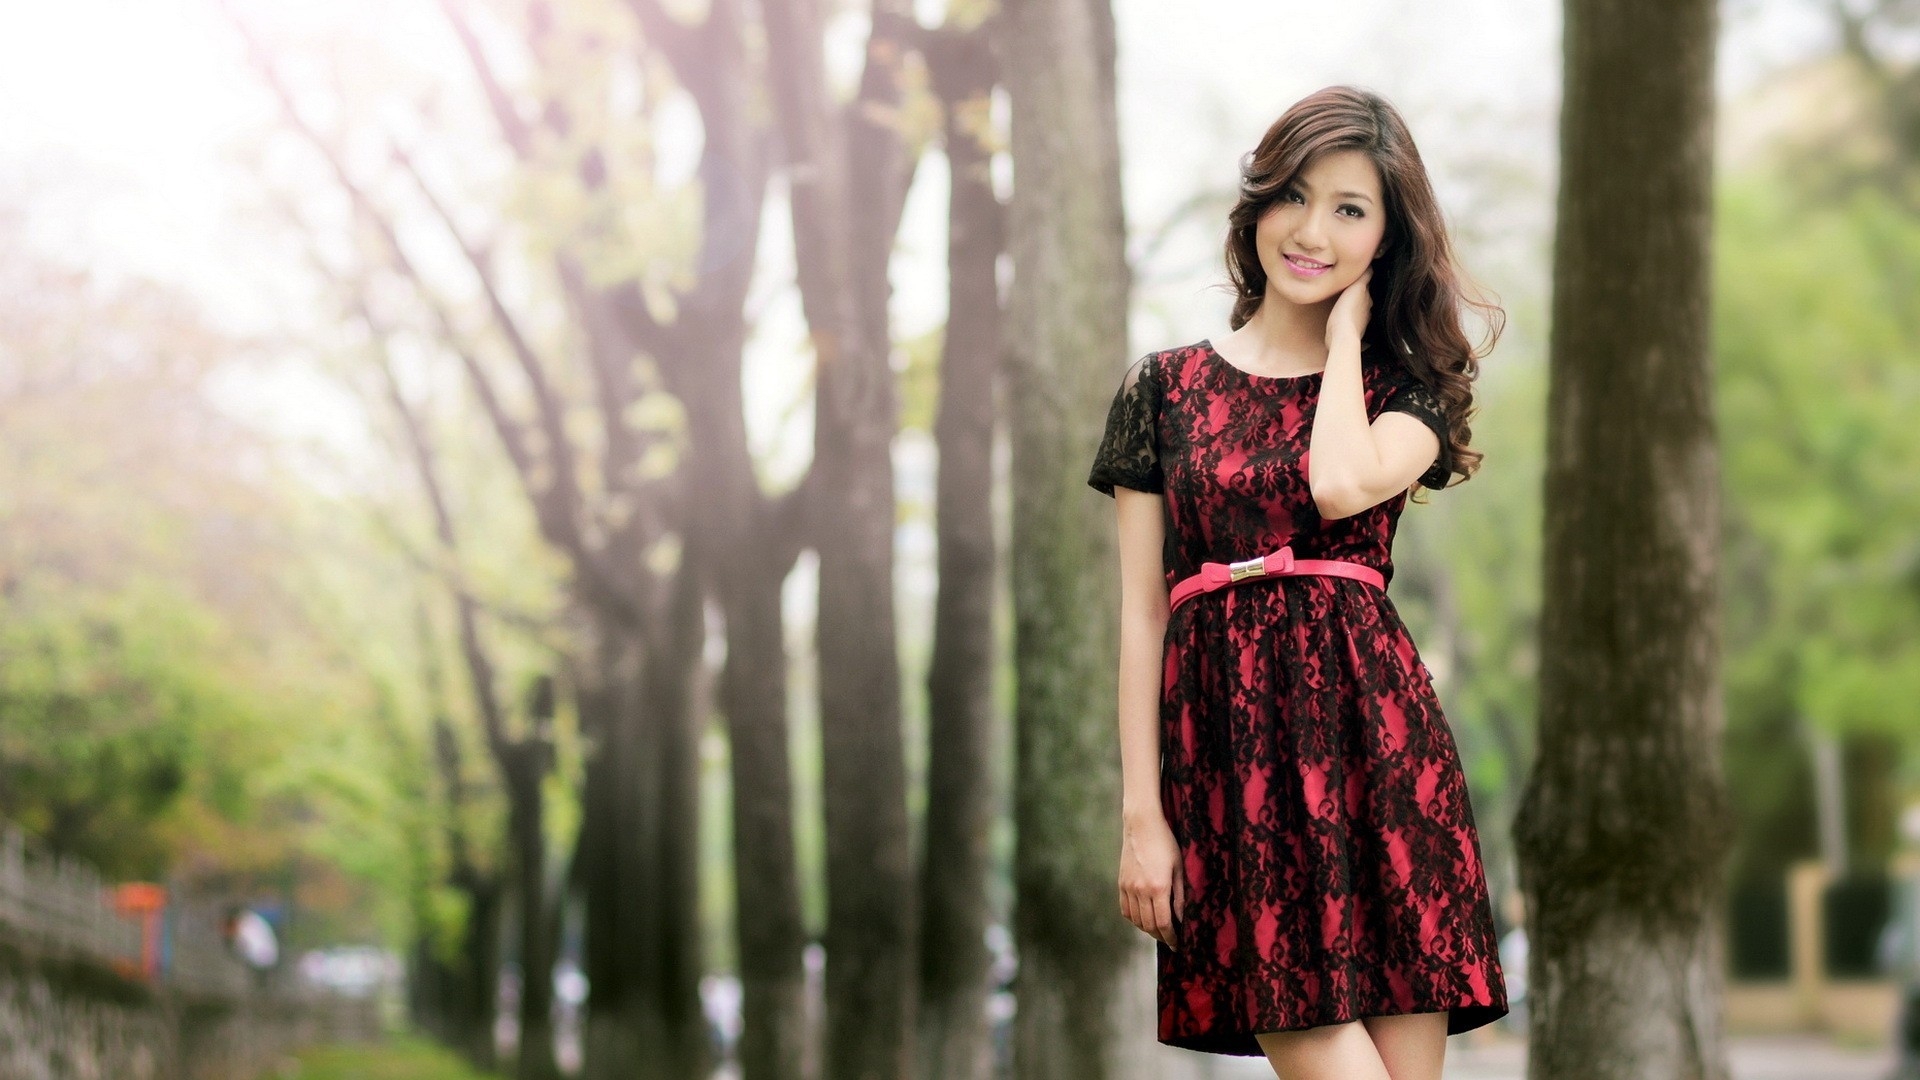 Wallpaper Dress Asian Girl Smile Love Full HD 1080p